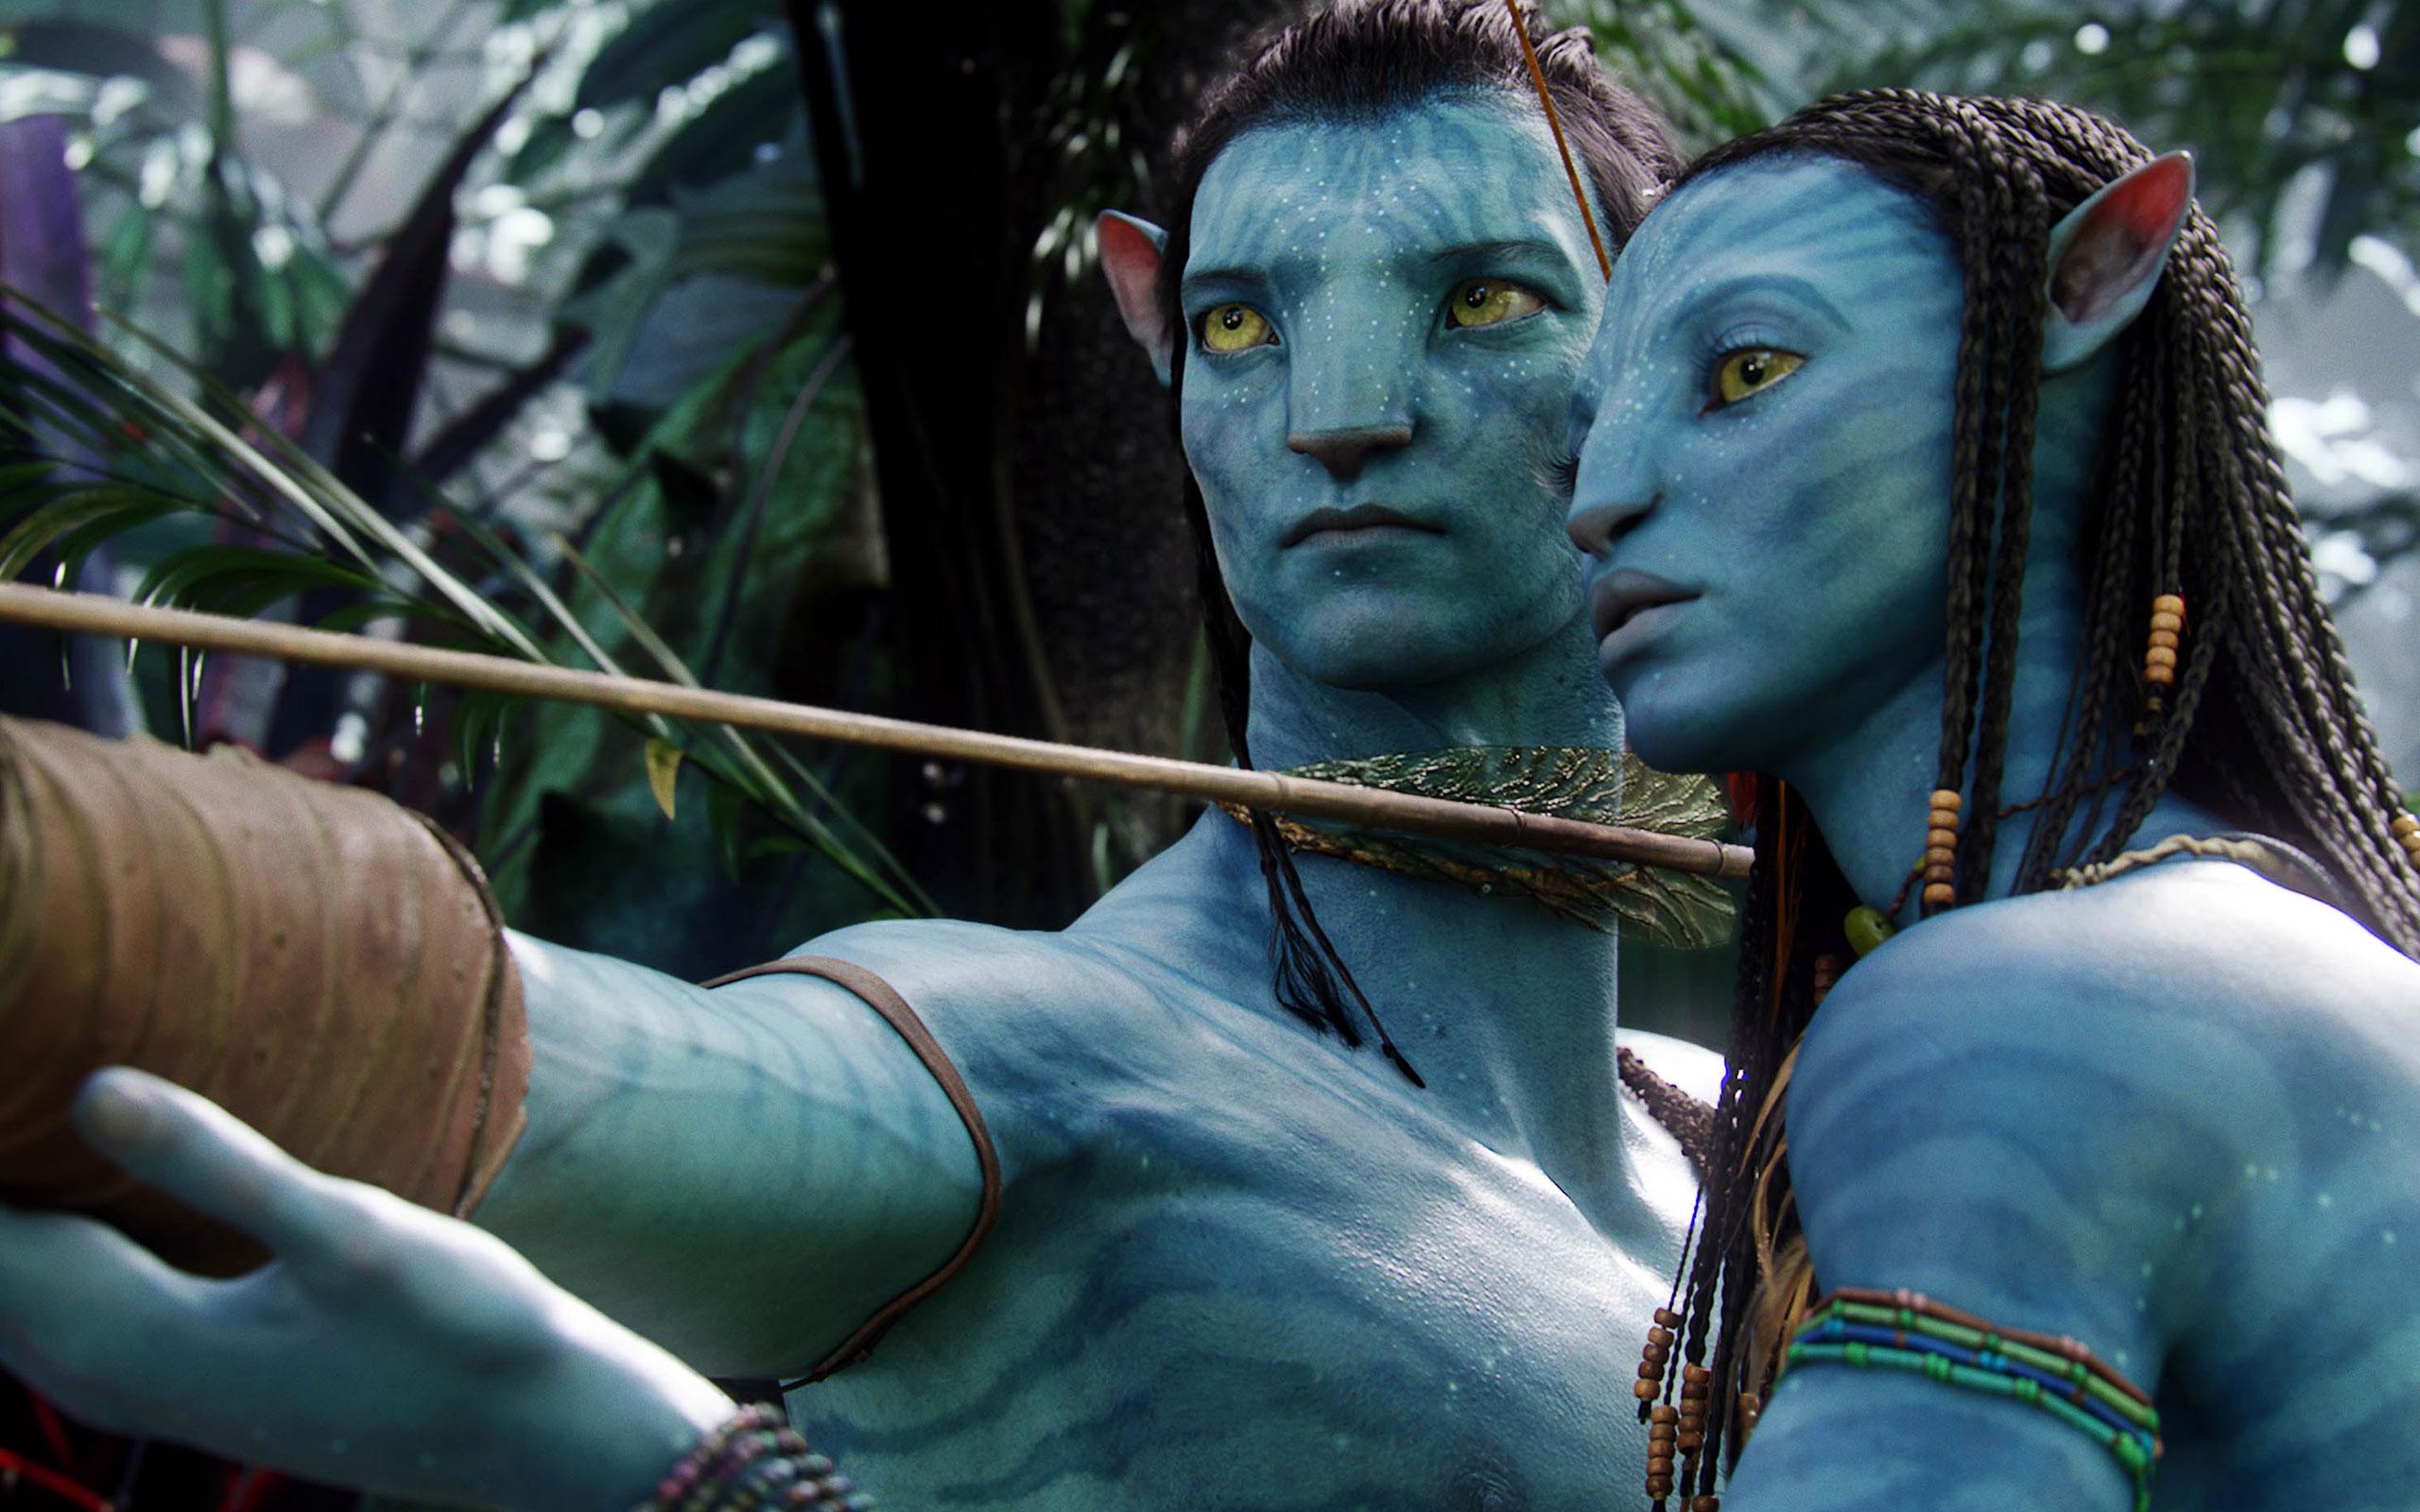 Jake Sully & Neytiri in Avatar Wallpaper. HD Wallpaper